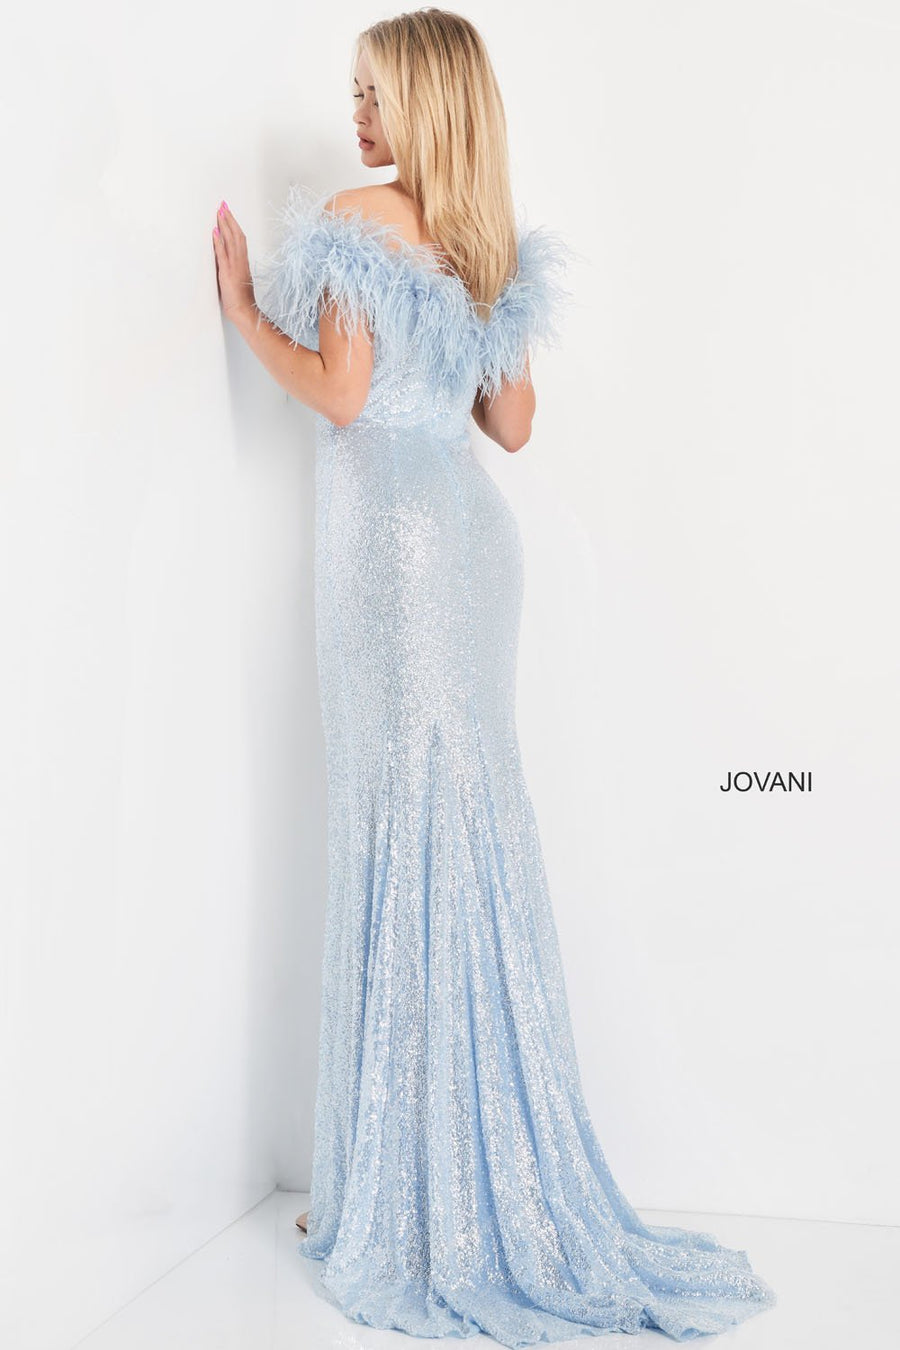 Jovani 06166 Dresses